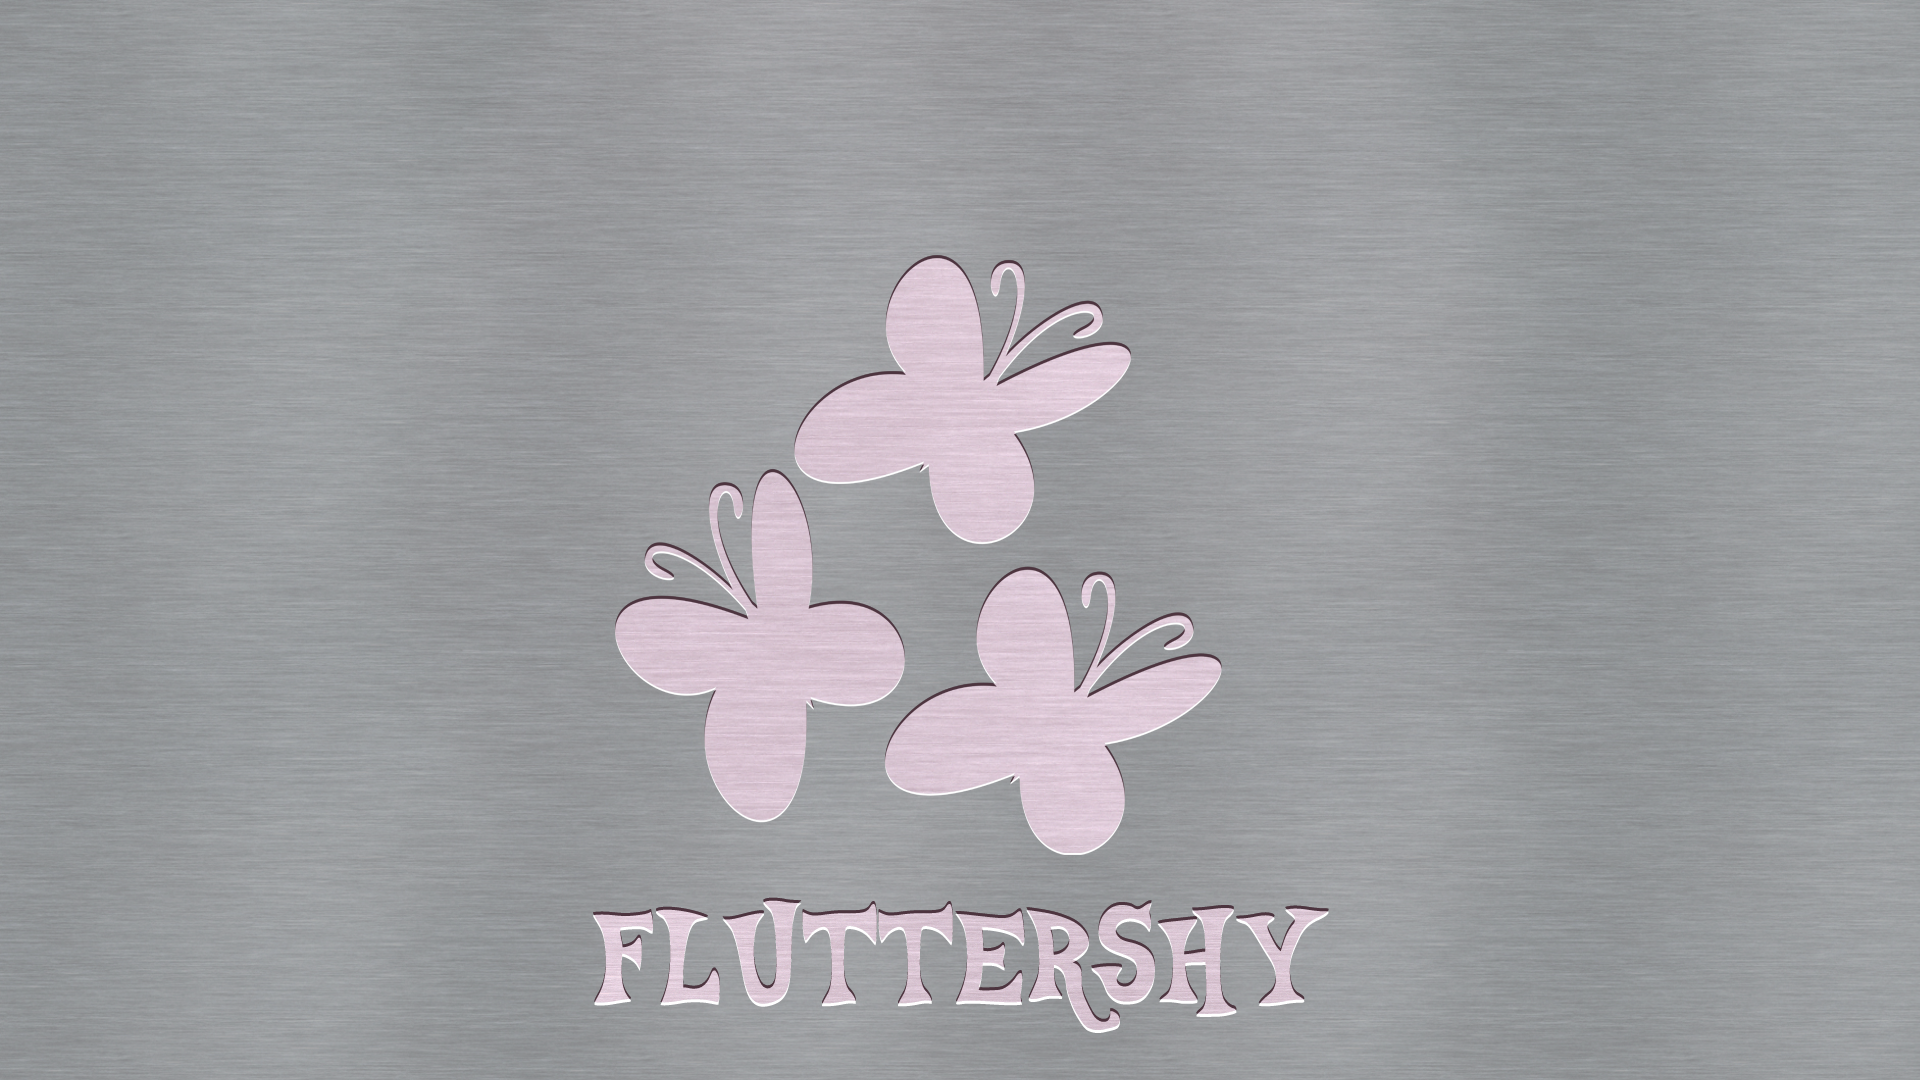 LetterPress Fluttershy(Dark) - Wallpaper by GuruGrendo